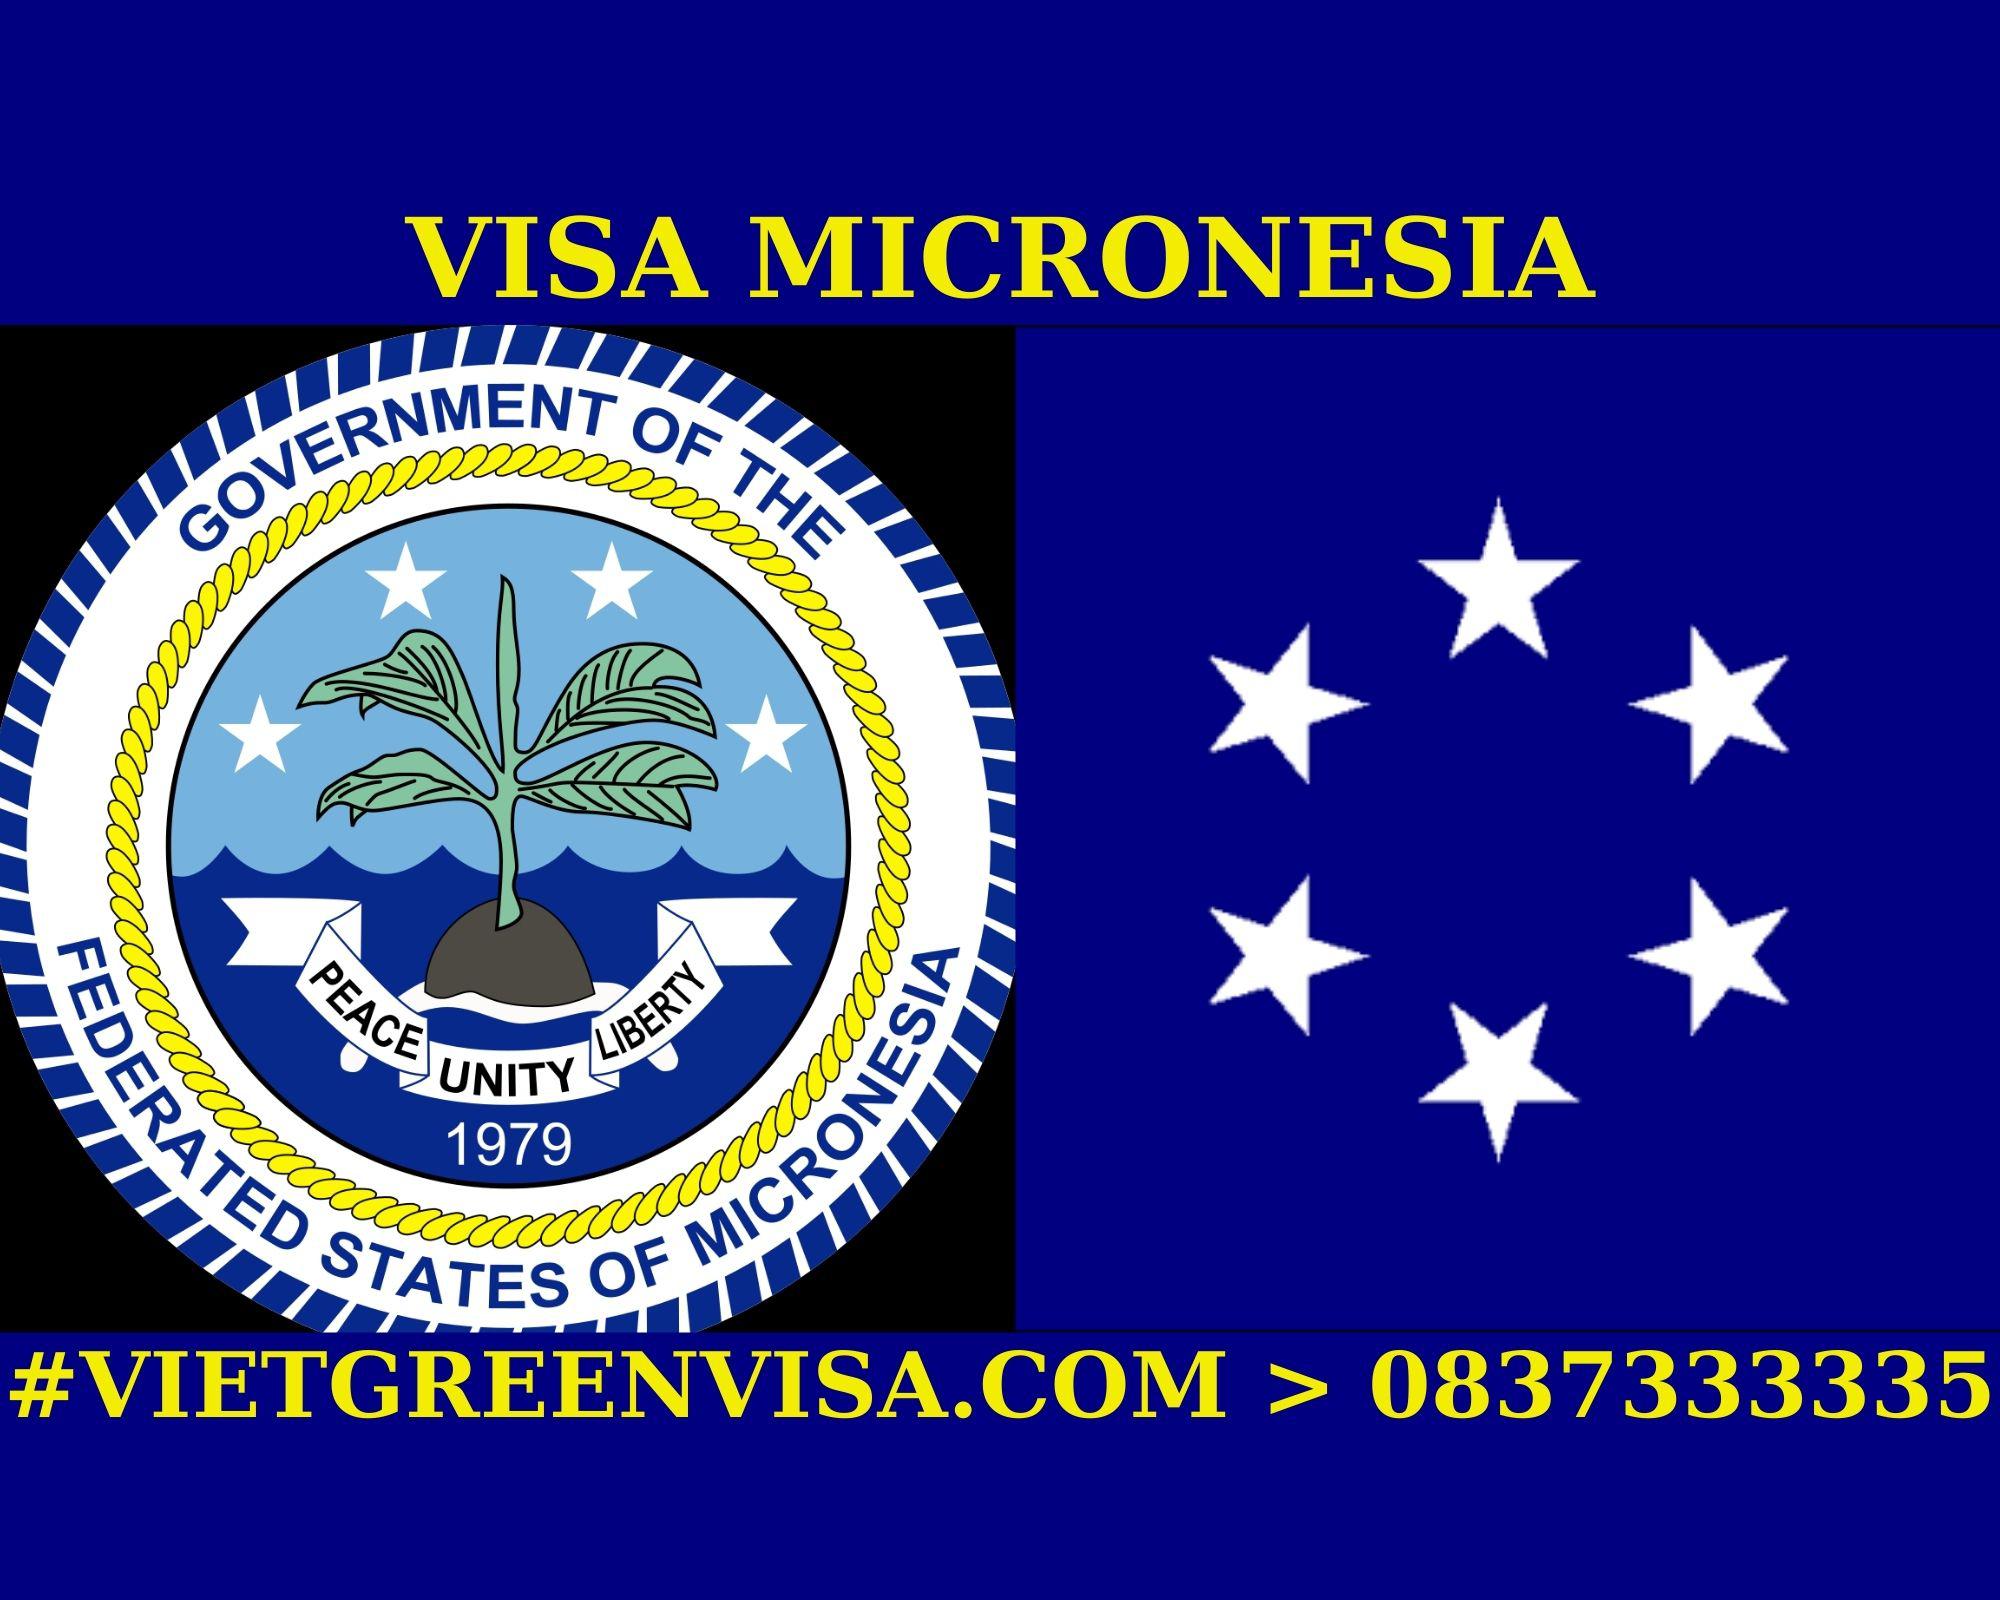 Làm Visa Micronesia thăm thân uy tín, nhanh chóng, giá rẻ